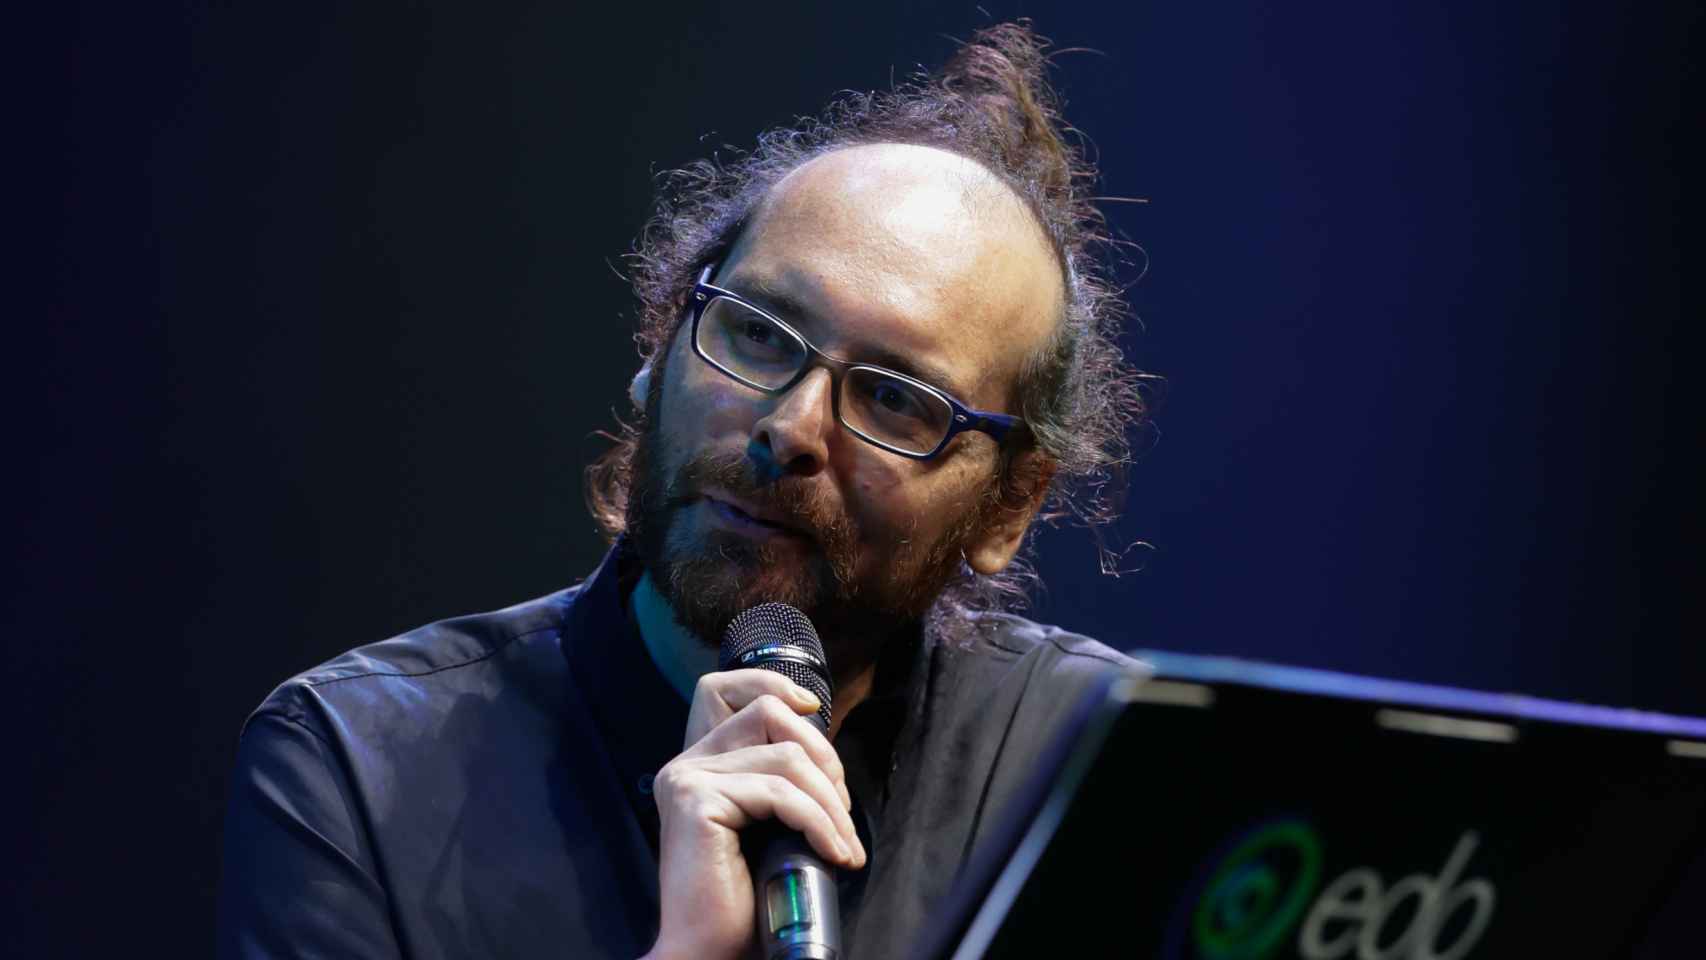 Hachè Costa, director y compositor de la obra.